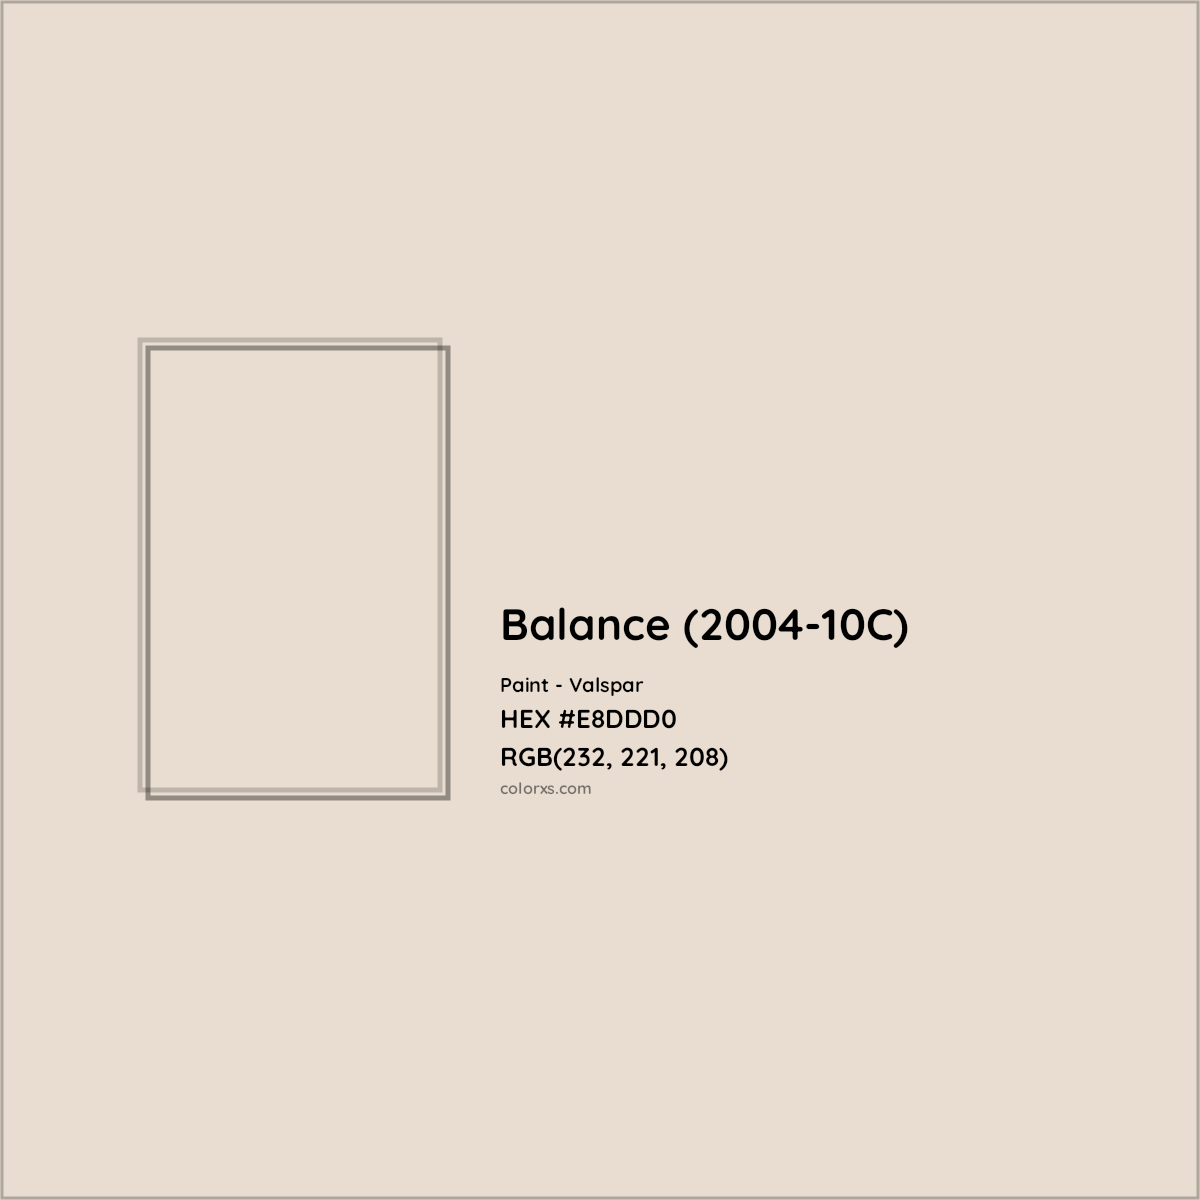 HEX #E8DDD0 Balance (2004-10C) Paint Valspar - Color Code